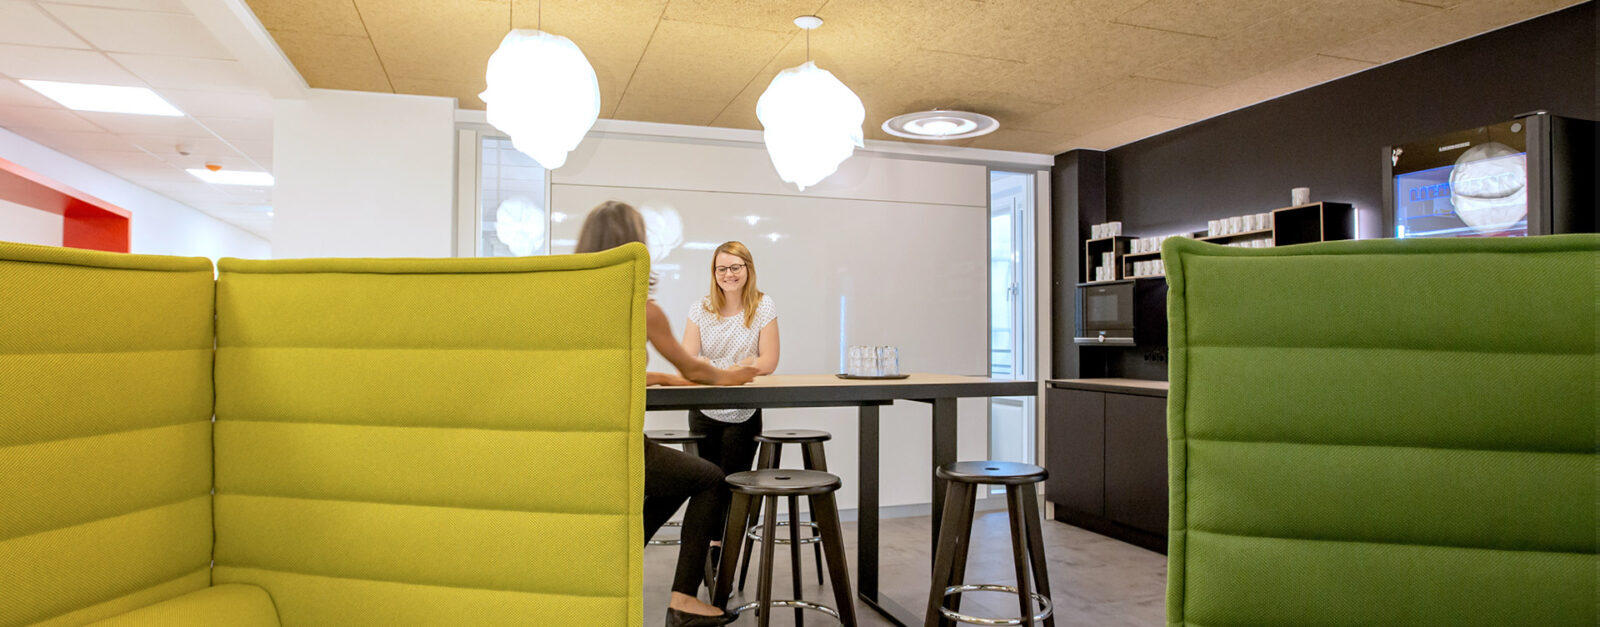 Moderne Bürokonzepte sorgen für zufriedene Mitarbeiterinnen und Mitarbeiter